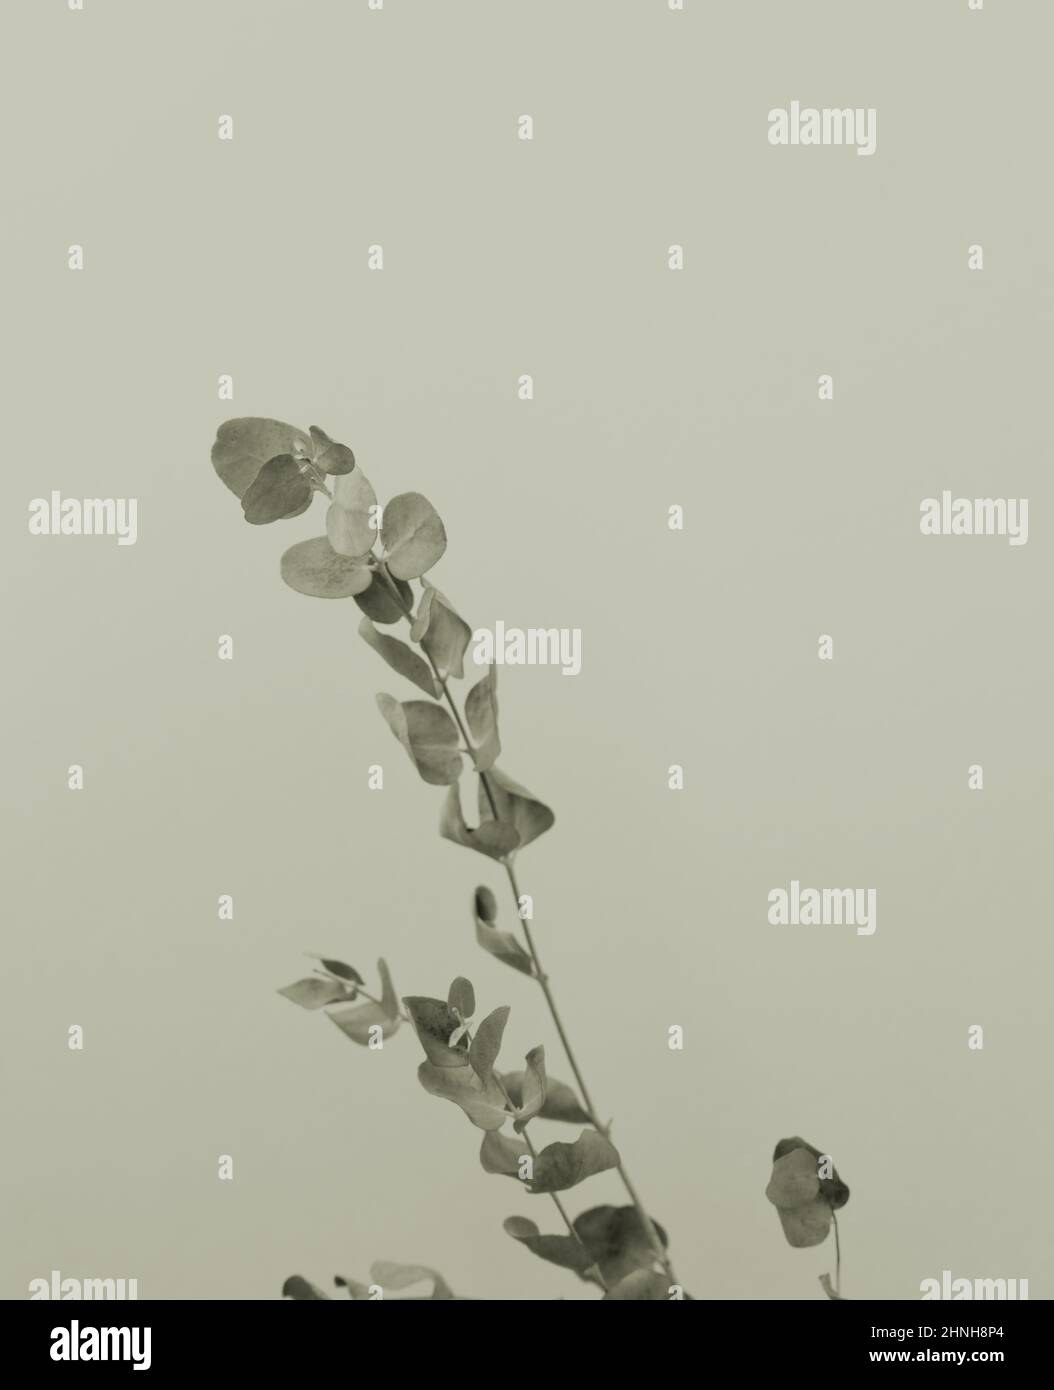 Dry eucalyptus leaf stem botanic floral foliage art background. Stock Photo